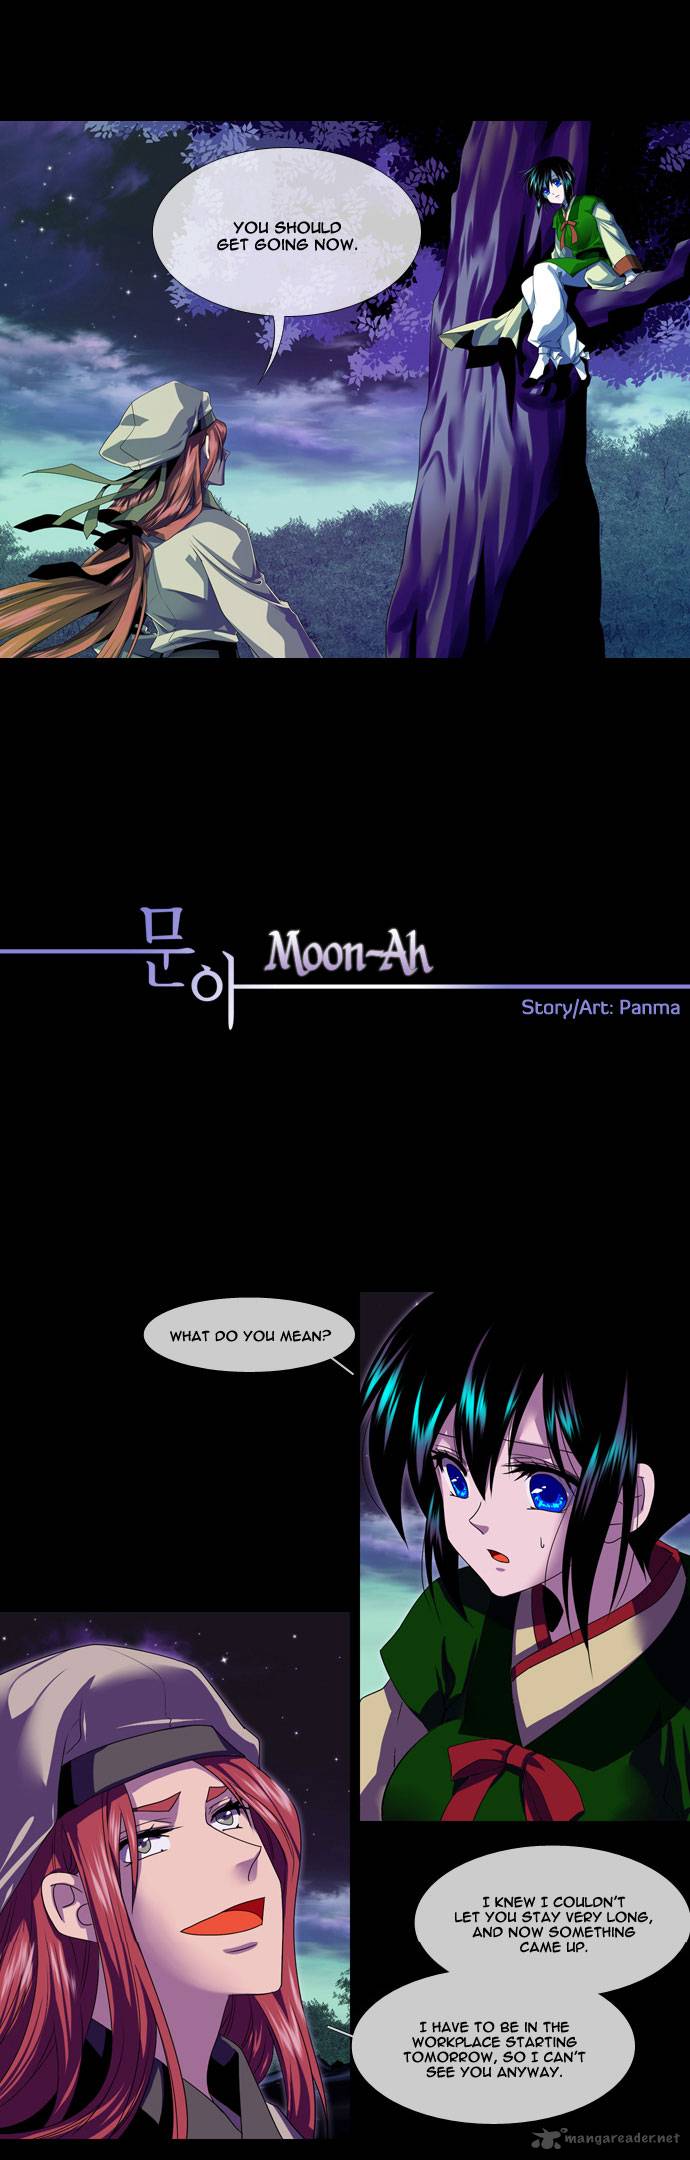 Moon Ah 15 2